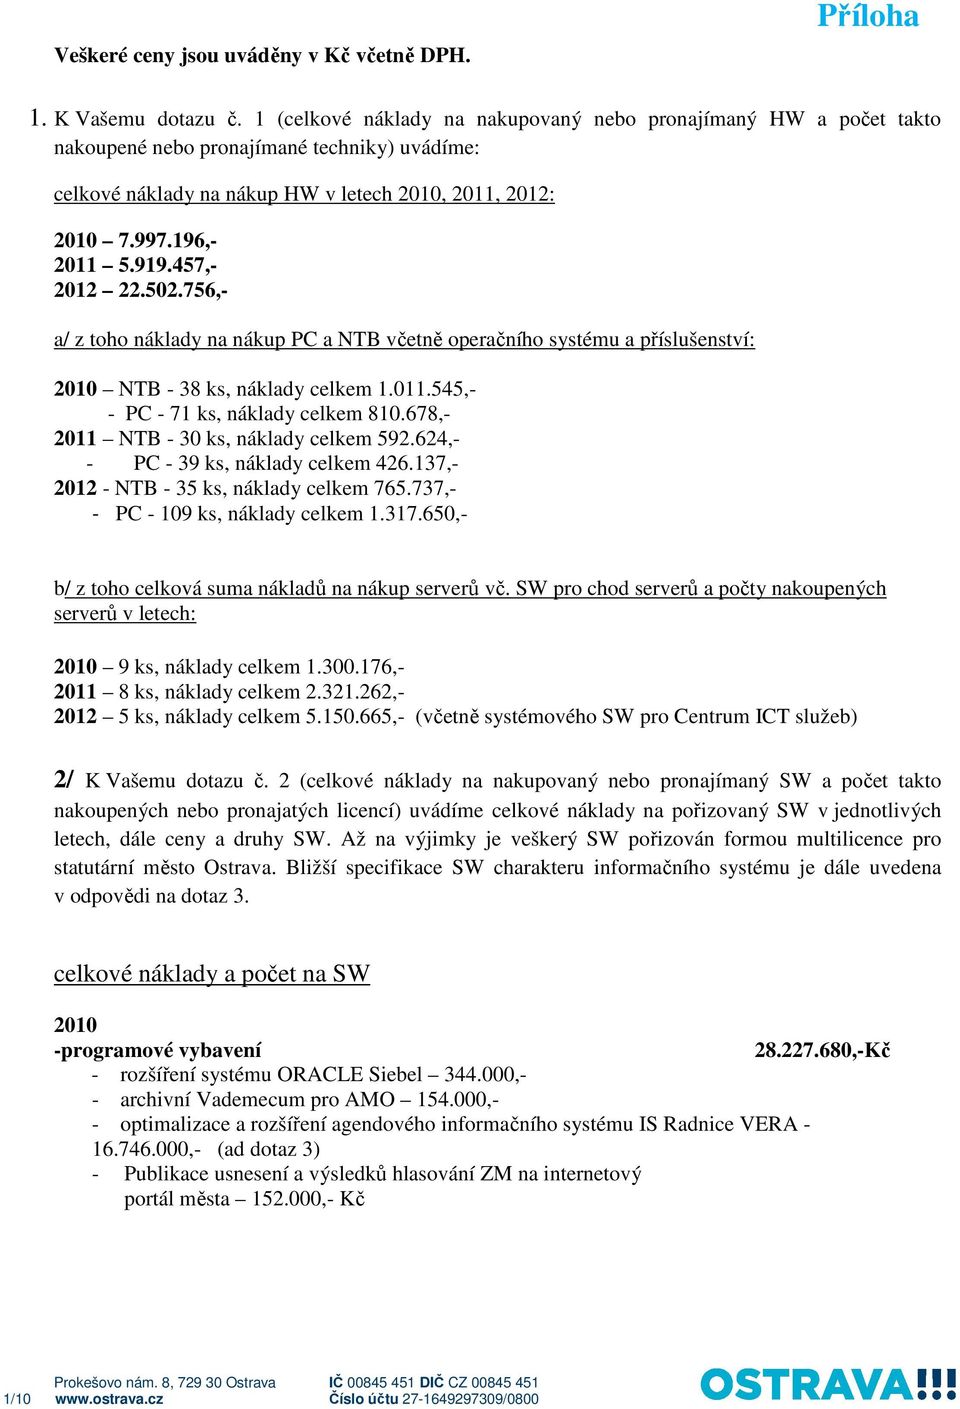 196,- 2011 5.919.457,- 2012 22.502.756,- a/ z toho náklady na nákup PC a NTB včetně operačního systému a příslušenství: 2010 NTB - 38 ks, náklady celkem 1.011.545,- - PC - 71 ks, náklady celkem 810.